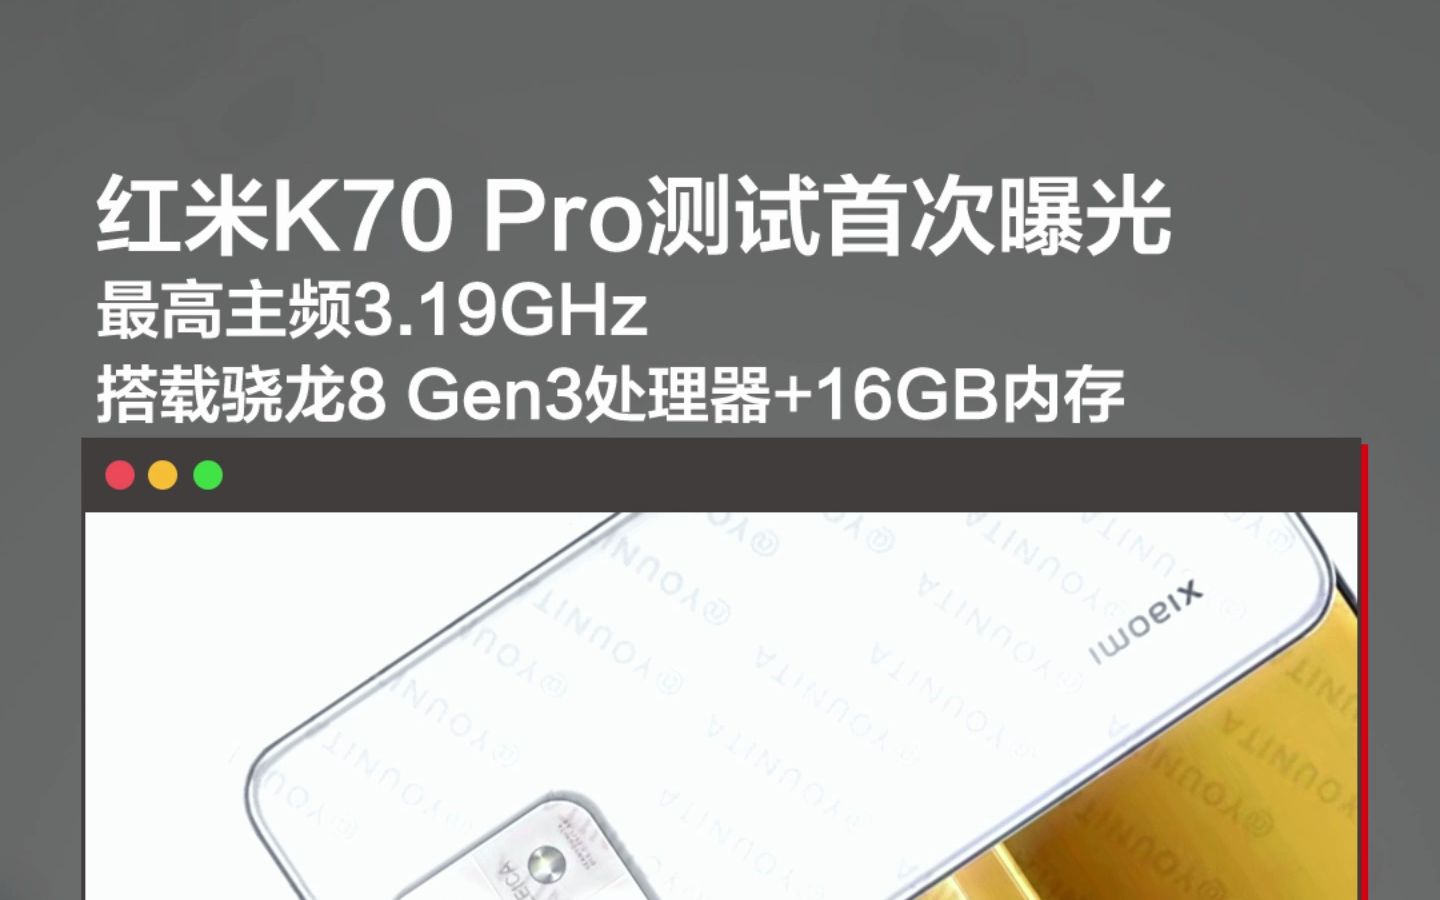 红米K70 Pro测试首次曝光，最高主频3.19GHz搭载骁龙8 Gen3处理器+16GB内存